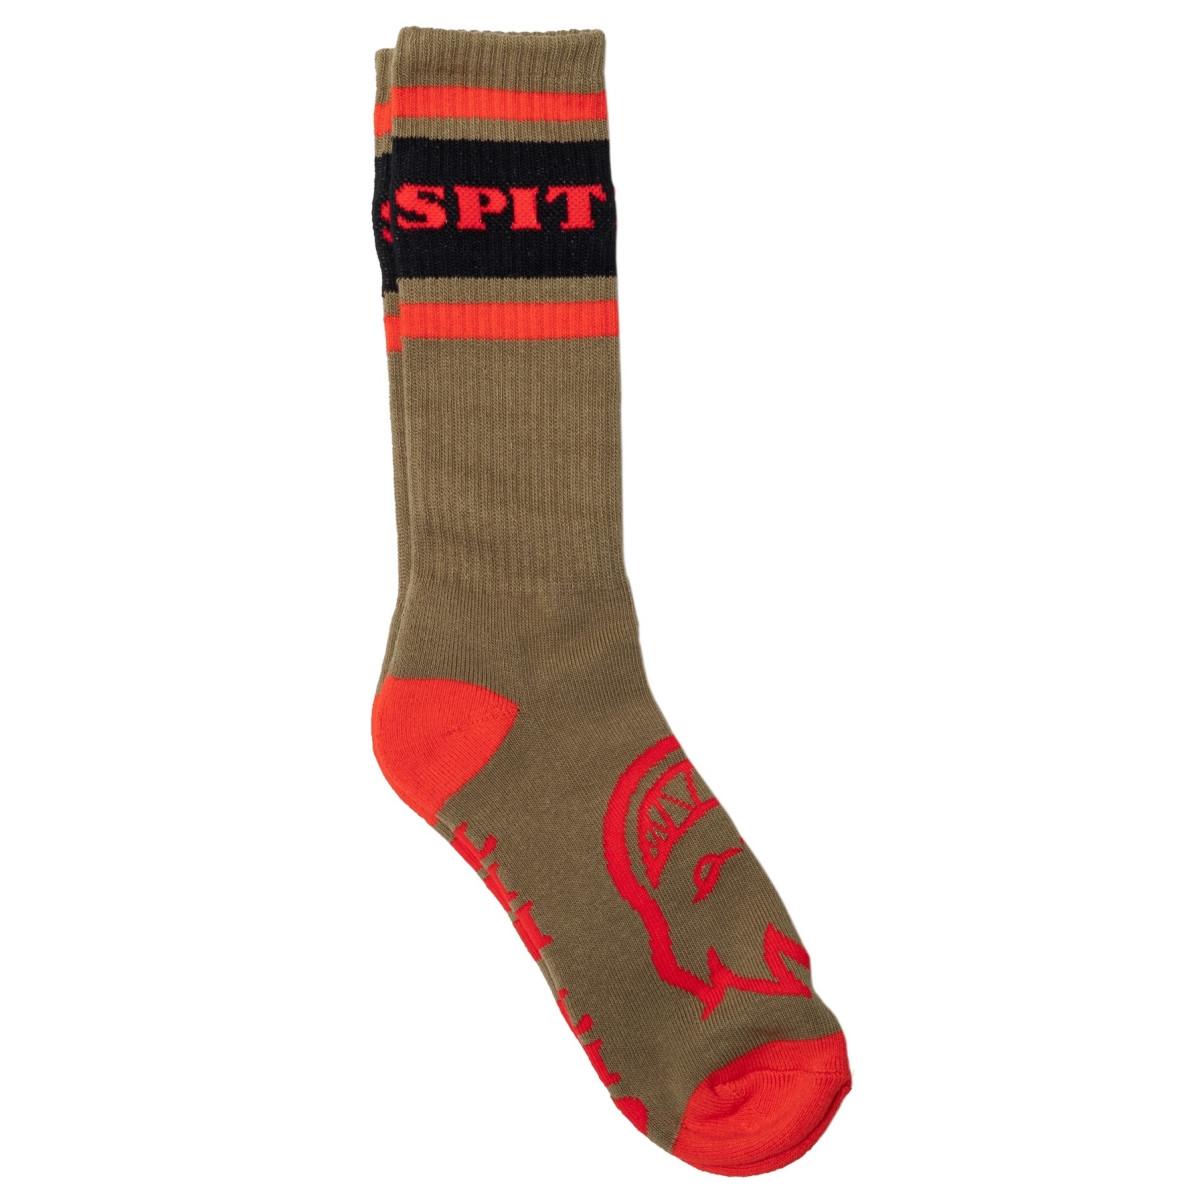 Spitfire socks brown red